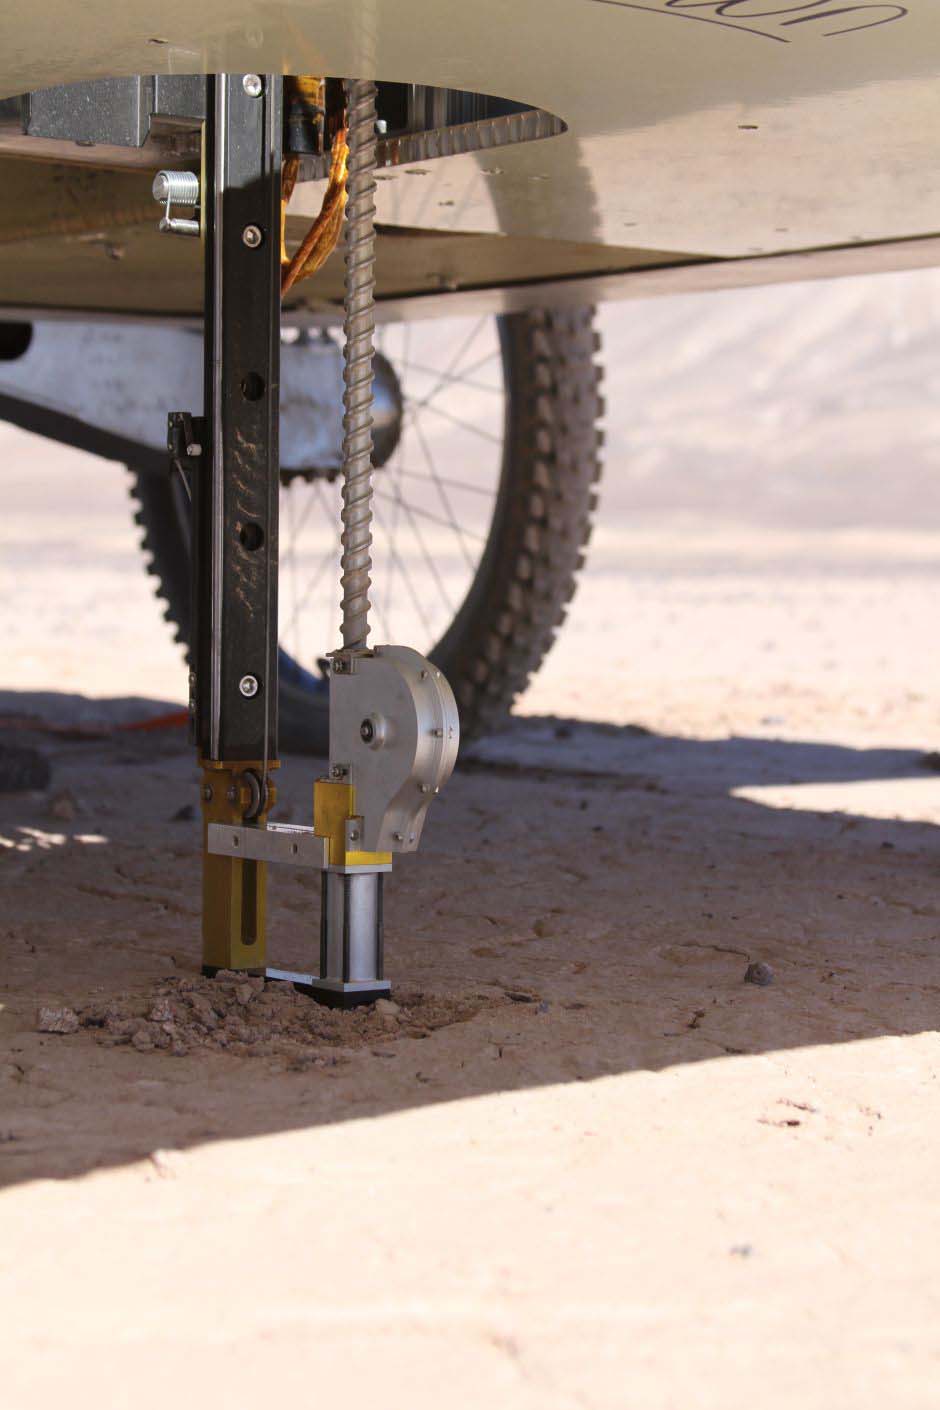 A broca robótica do veículo em uso no deserto de Atacama